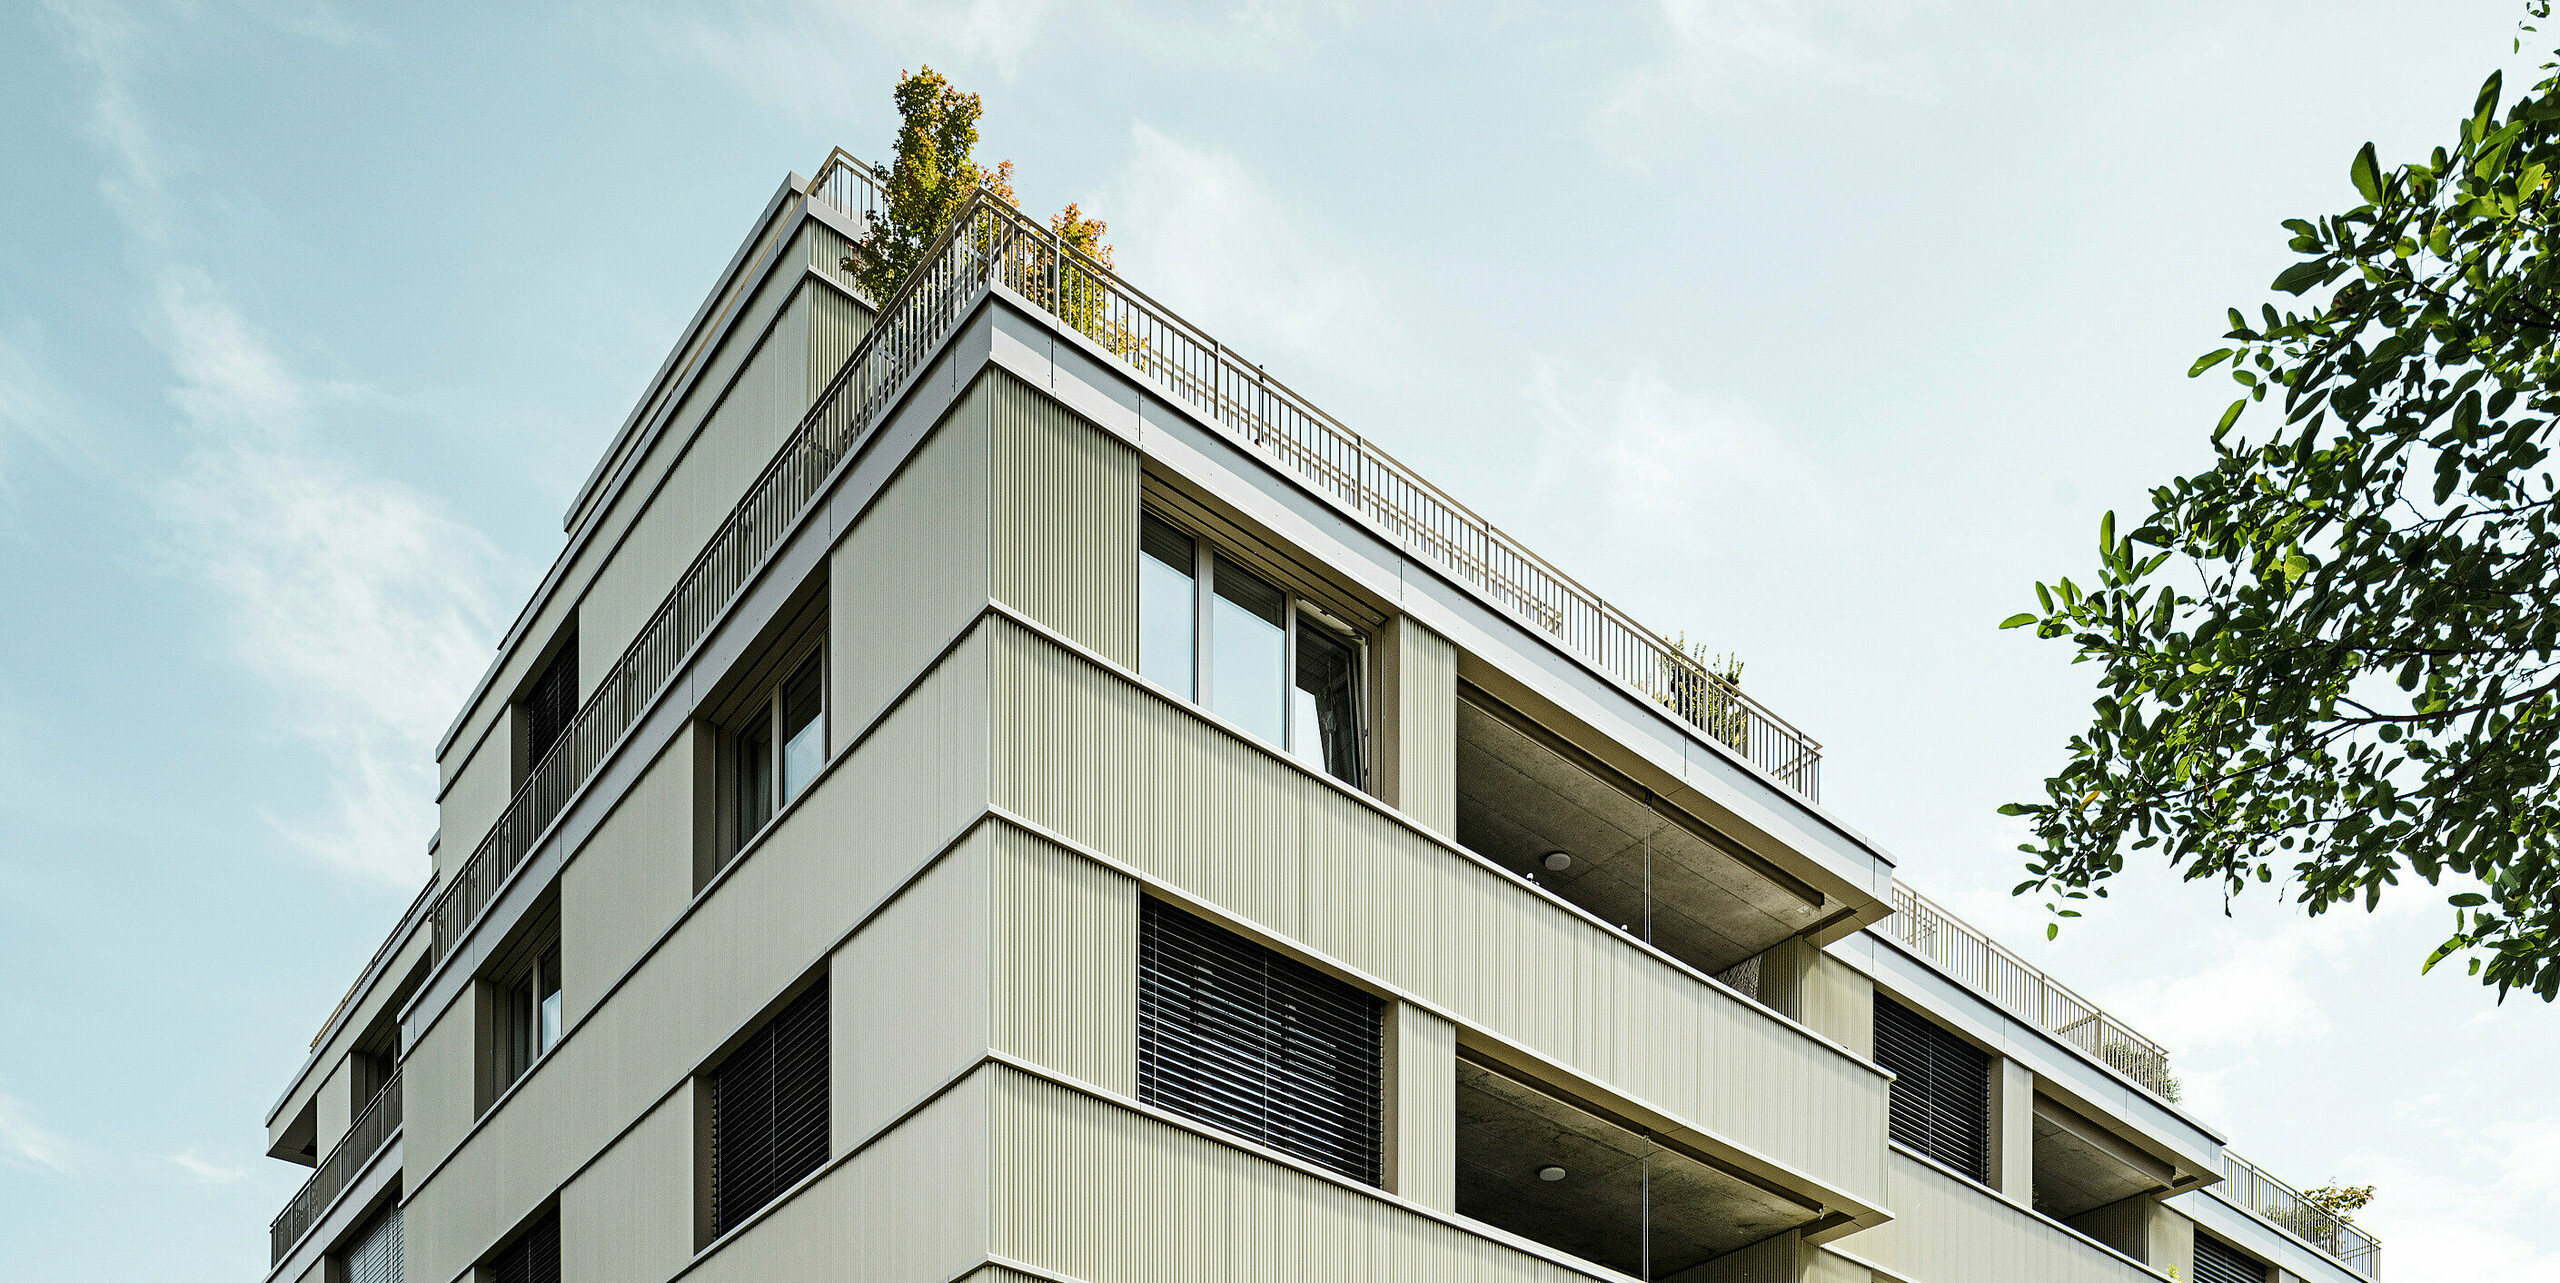 Sodobna stanovanjska stavba "Stetterhaus" v soseski Altstetten obdaja edinstvena fasada z zobčastimi profili PREFA v posebni biserno kovinski barvi.